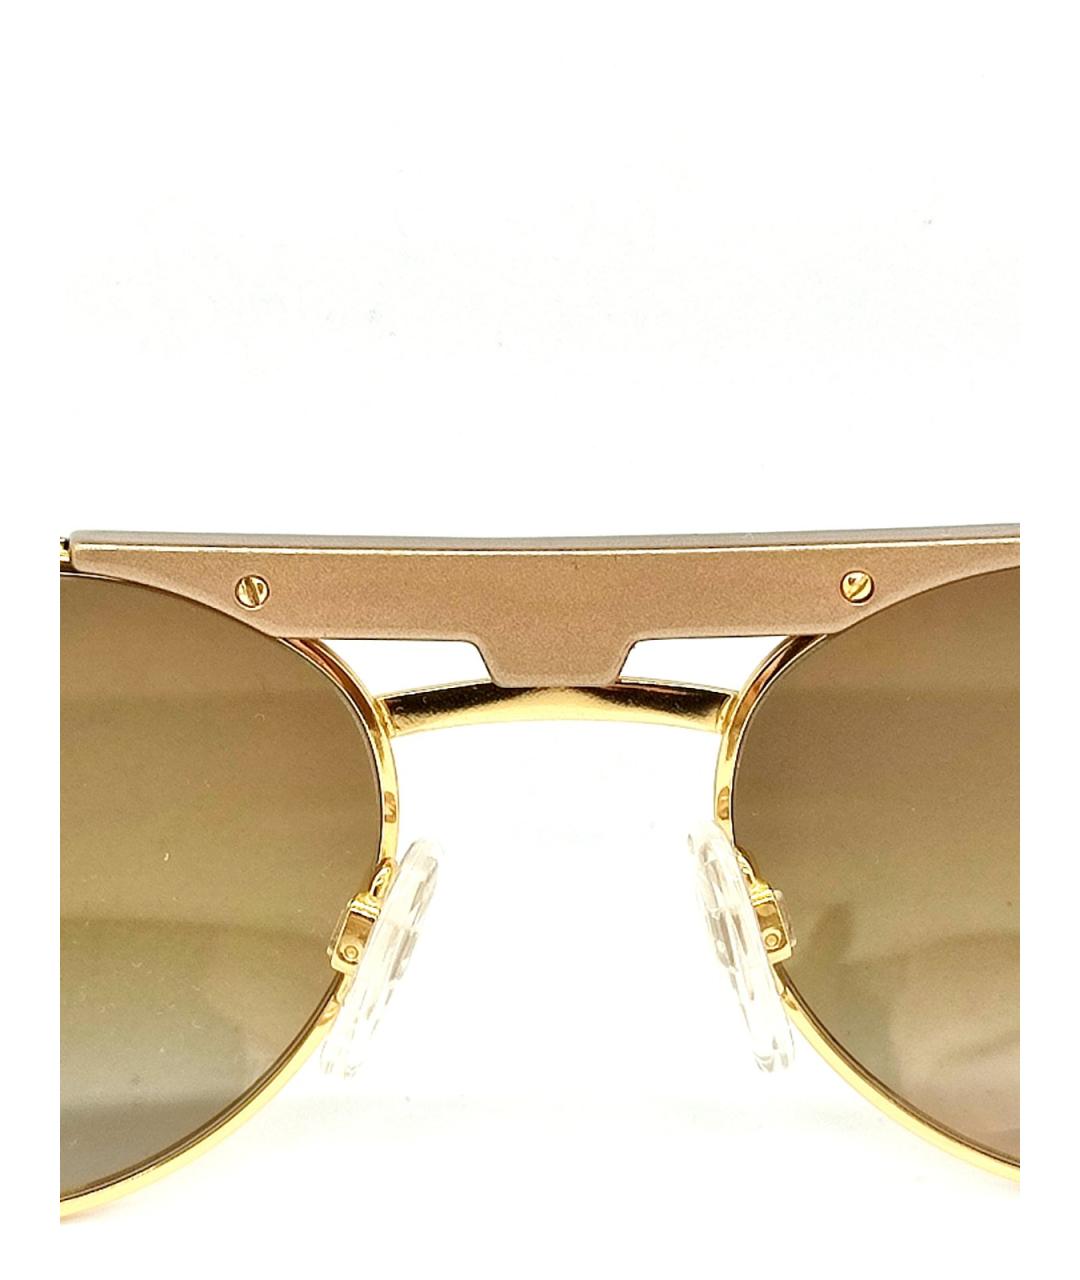 CAZAL Золотые металлические солнцезащитные очки, фото 7